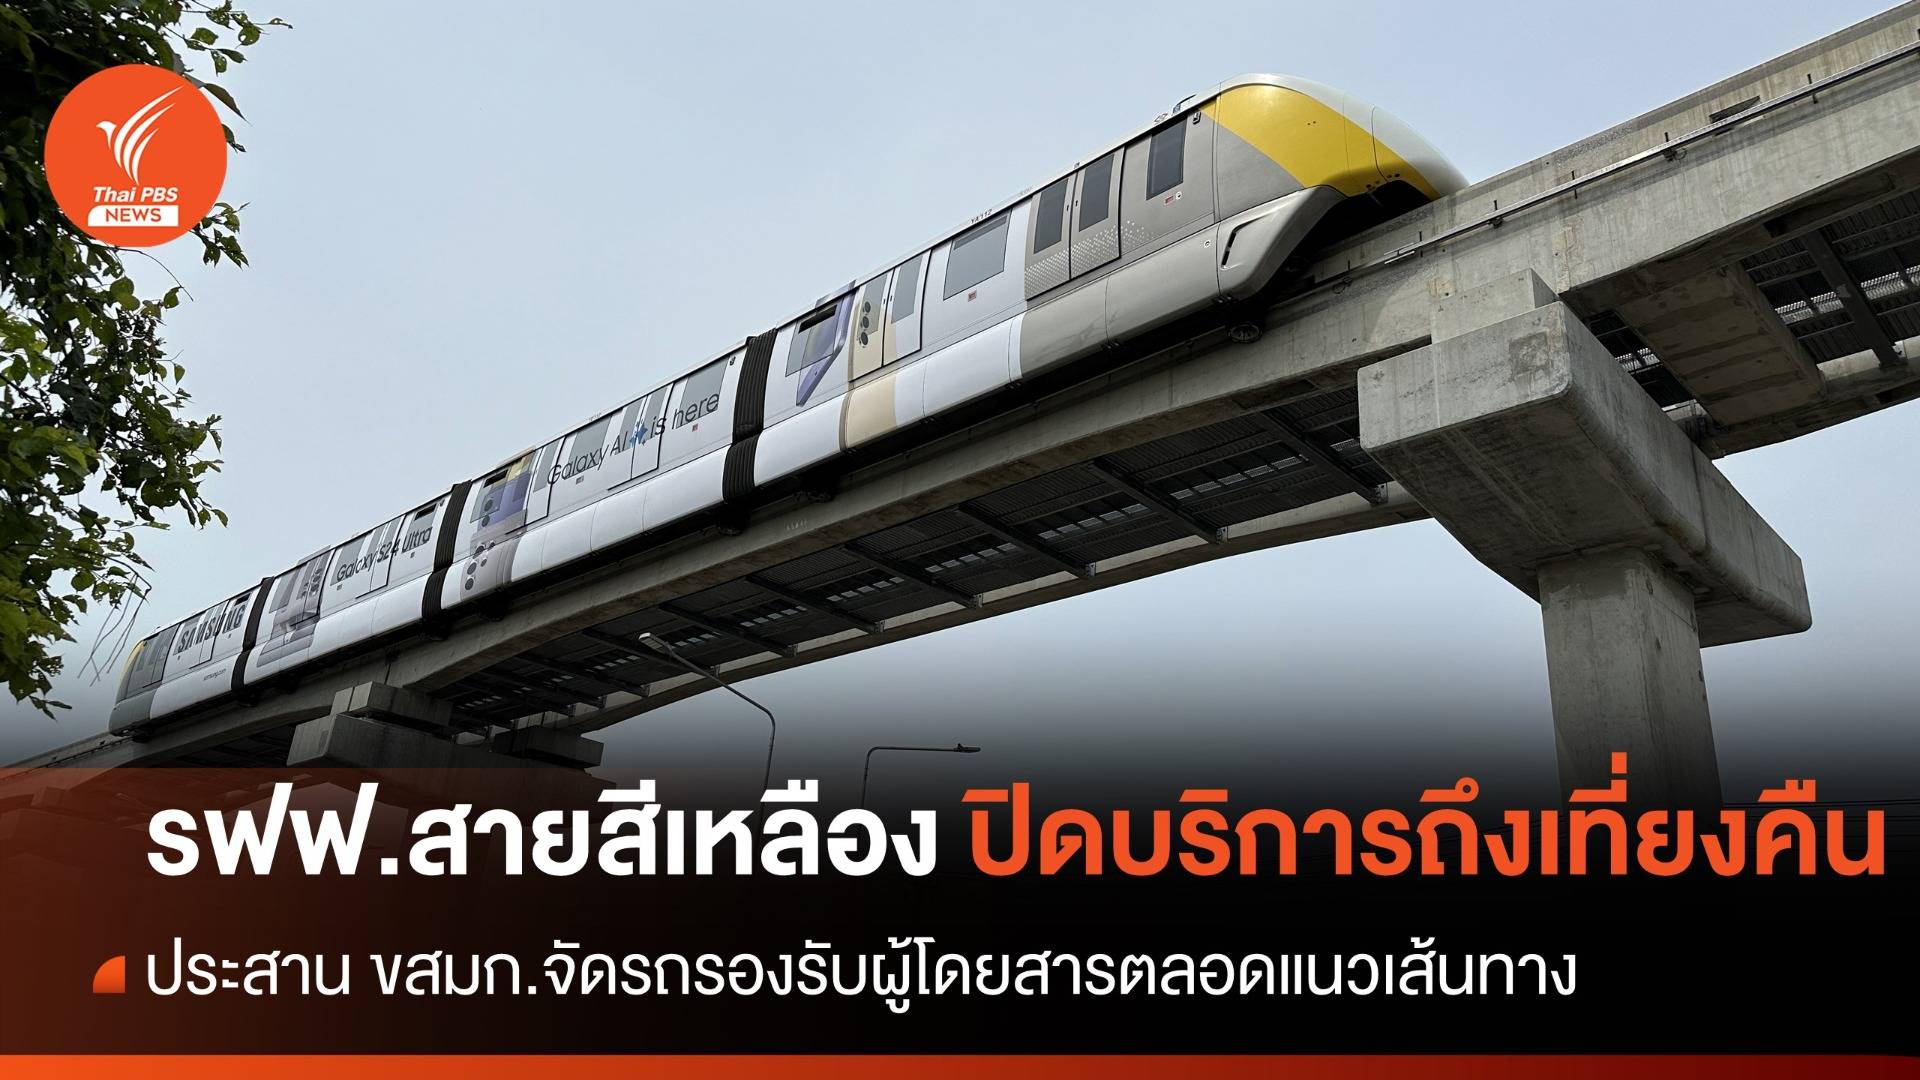 วันนี้ รถไฟฟ้าสายสีเหลือง ทุกสถานีปิดบริการถึงเที่ยงคืน  